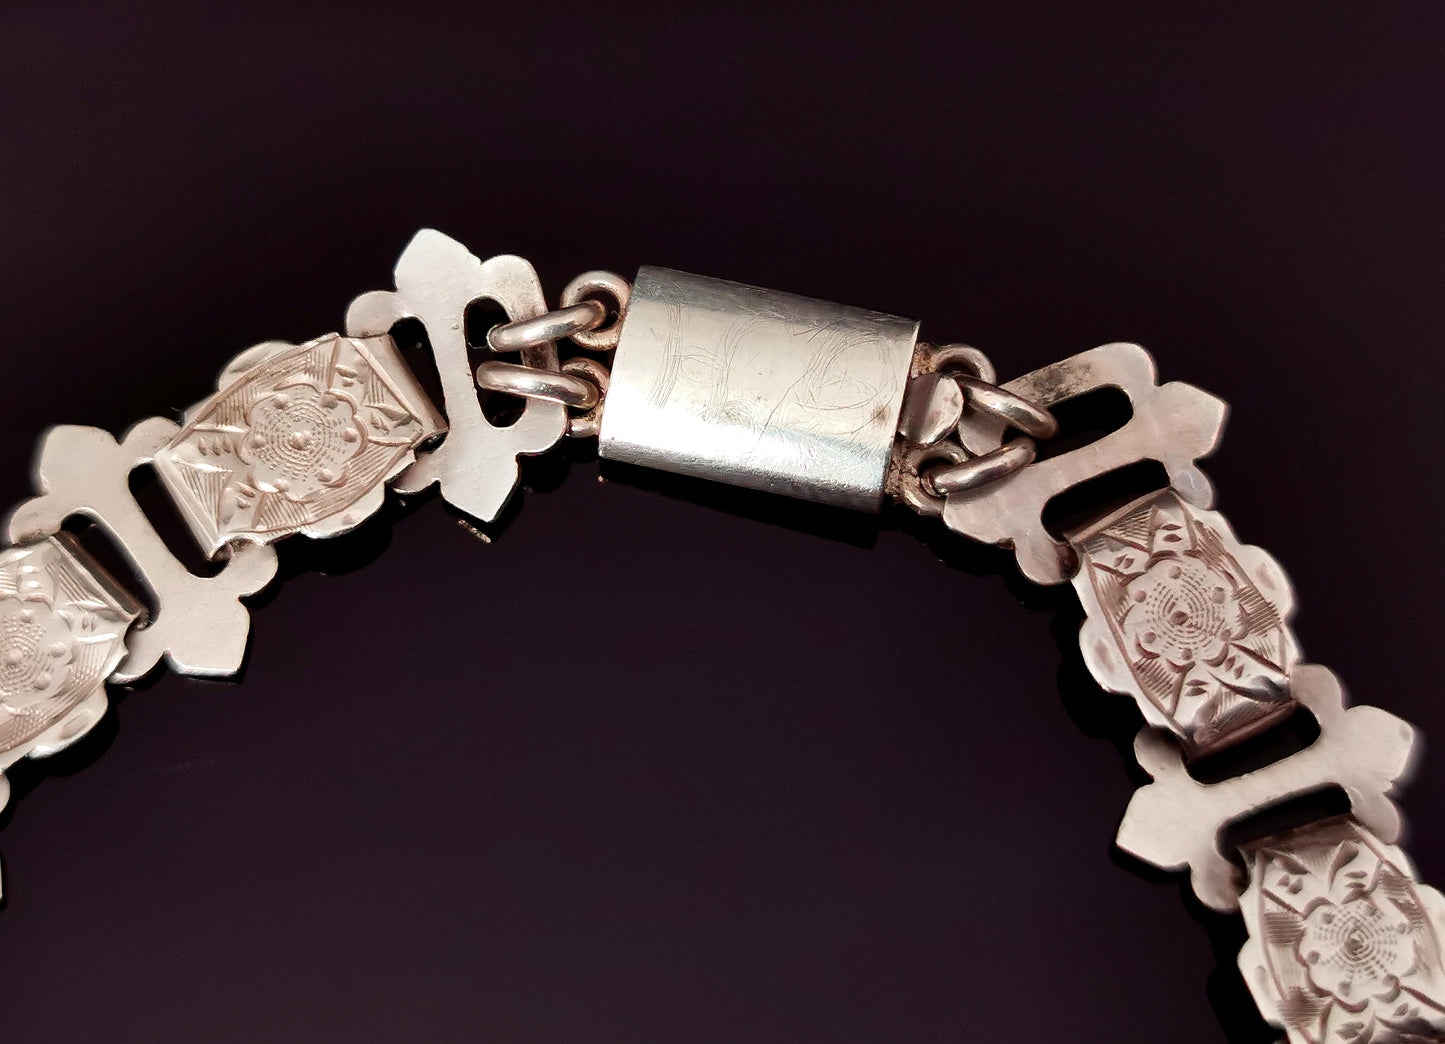 Antique Victorian silver book chain bracelet, floral